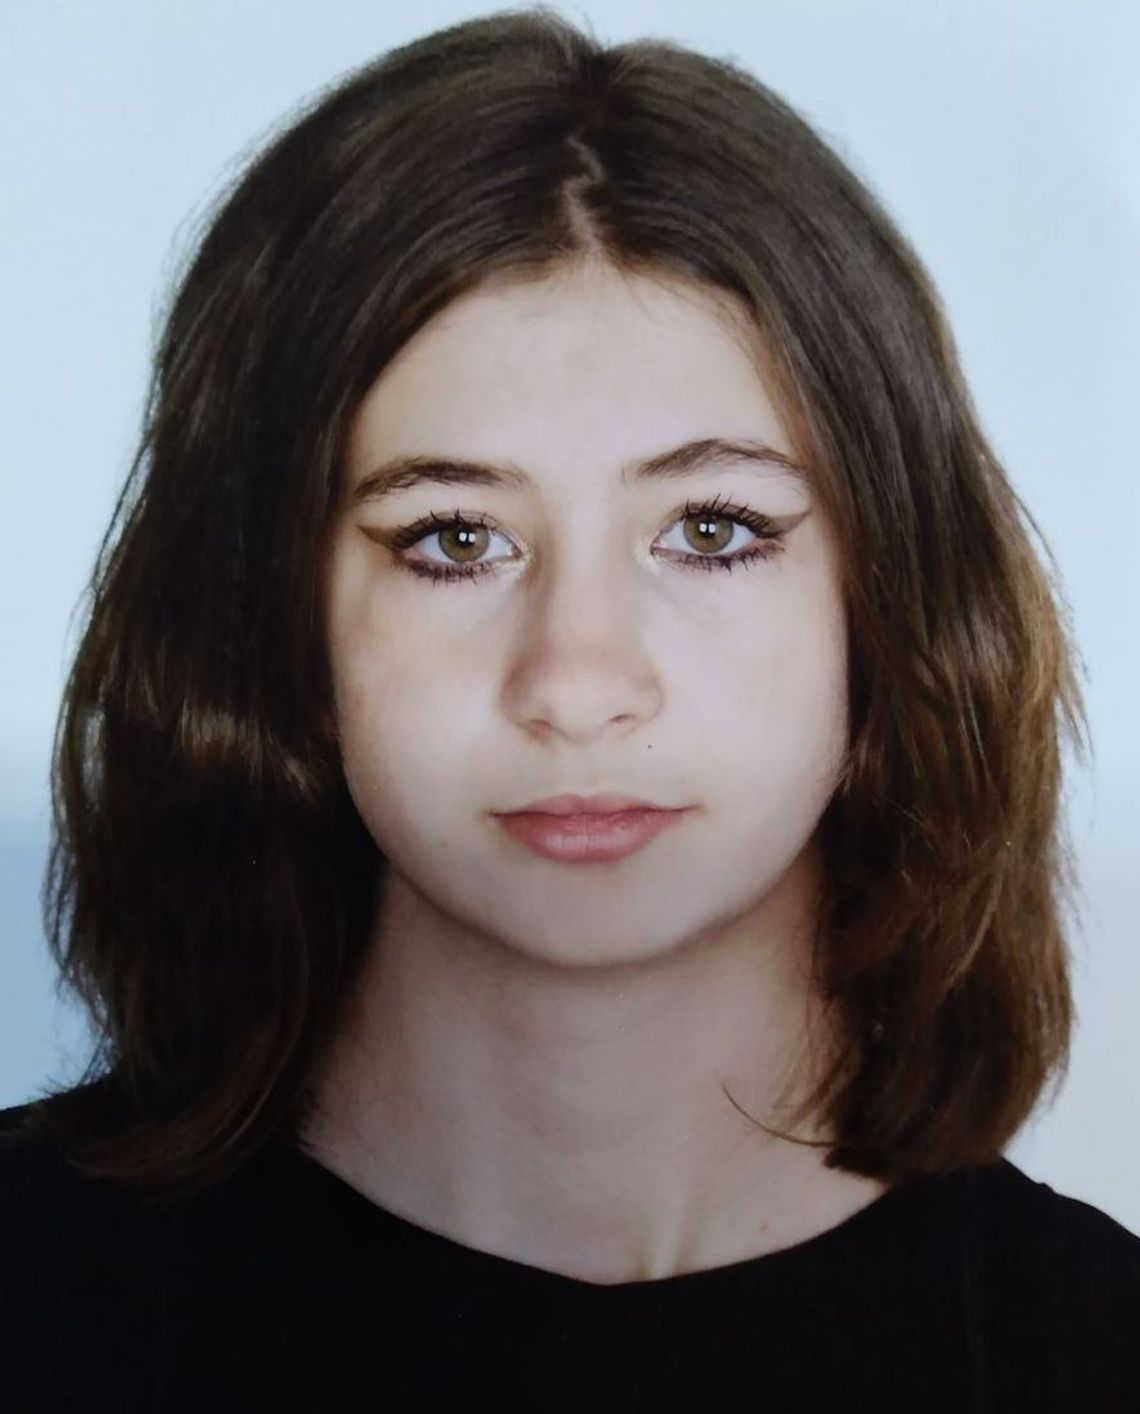 Poszukiwania 16-letniej Oliwii. Dziewczyna wyszła z placówki opiekuńczej i ślad po niej się urwał